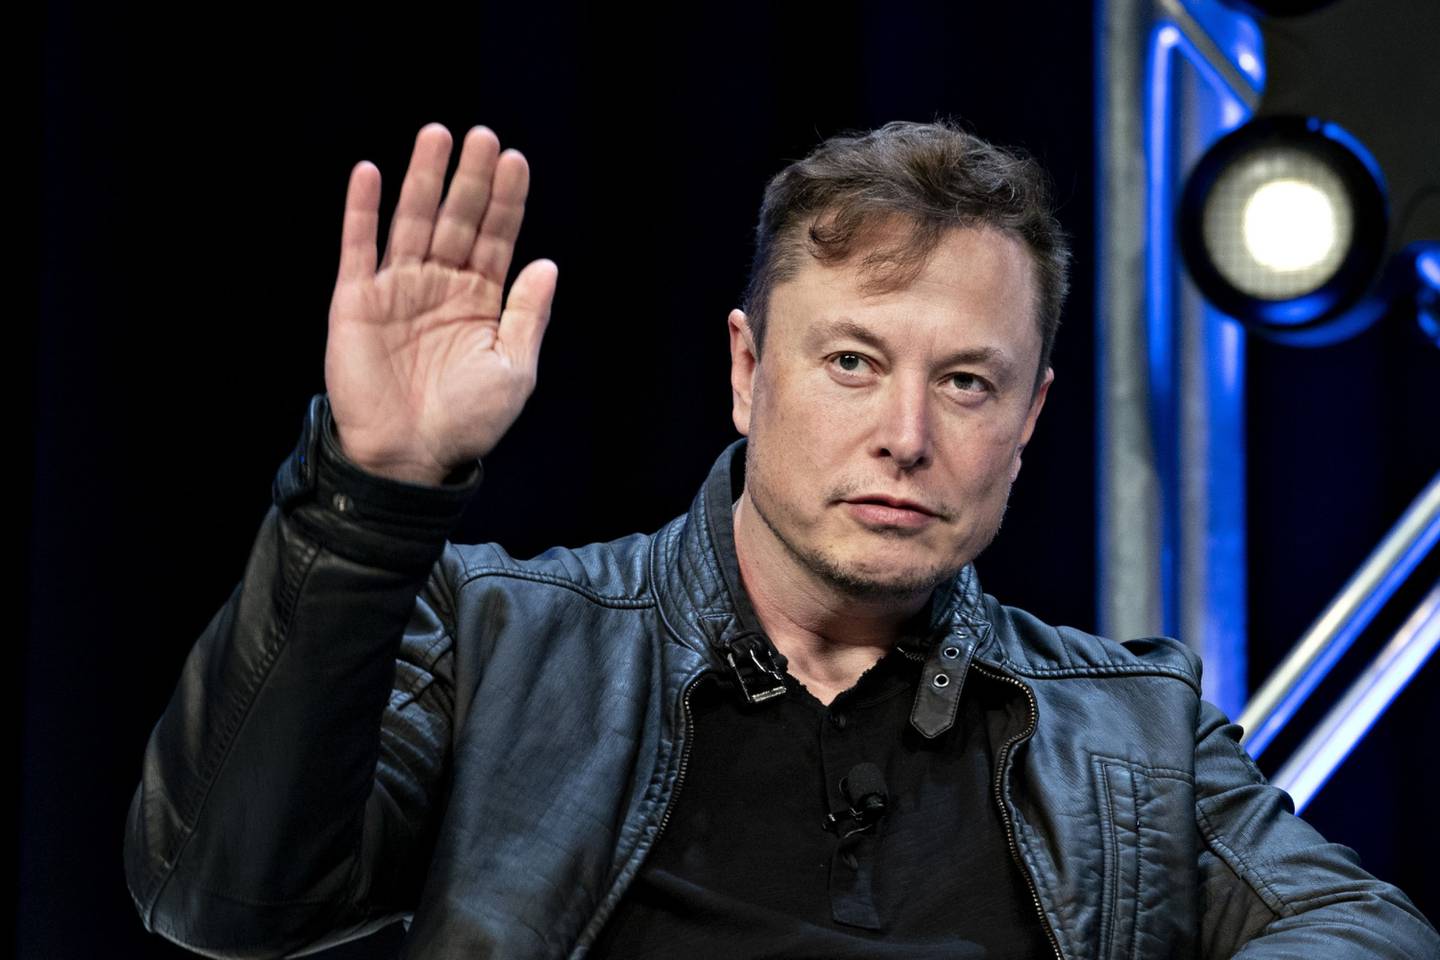 Elon Musk, fundador de SpaceX y director ejecutivo de Tesla Inc. saluda mientras llega a un debate en la Conferencia Satellite 2020 en Washington, D.C., Estados Unidos, el lunes 9 de marzo de 2020.